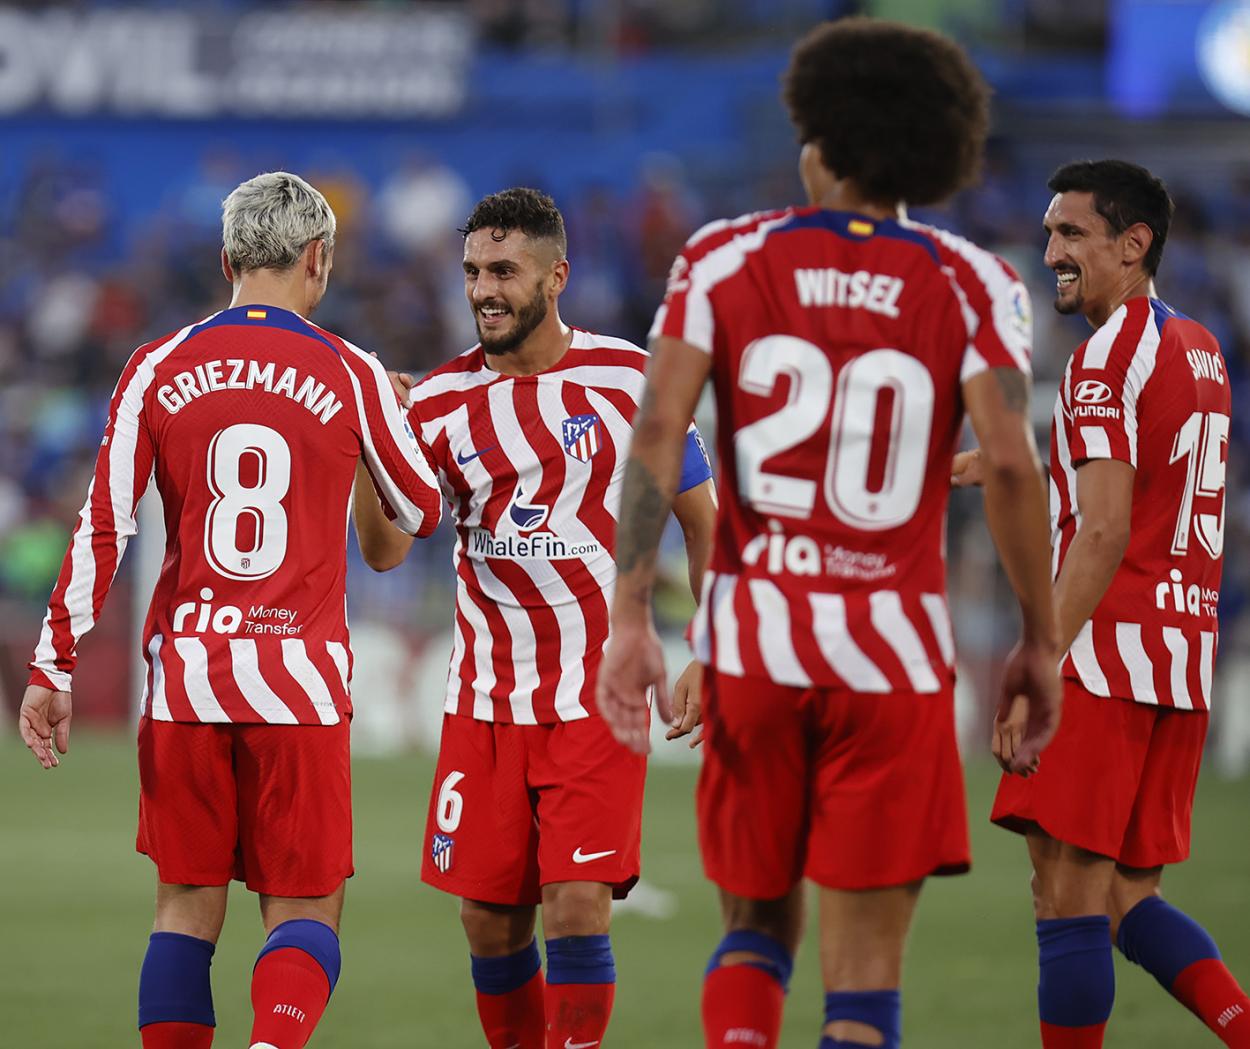 Parte del equipo en la celebración del último gol. Perfil oficial del Atlético de Madrid